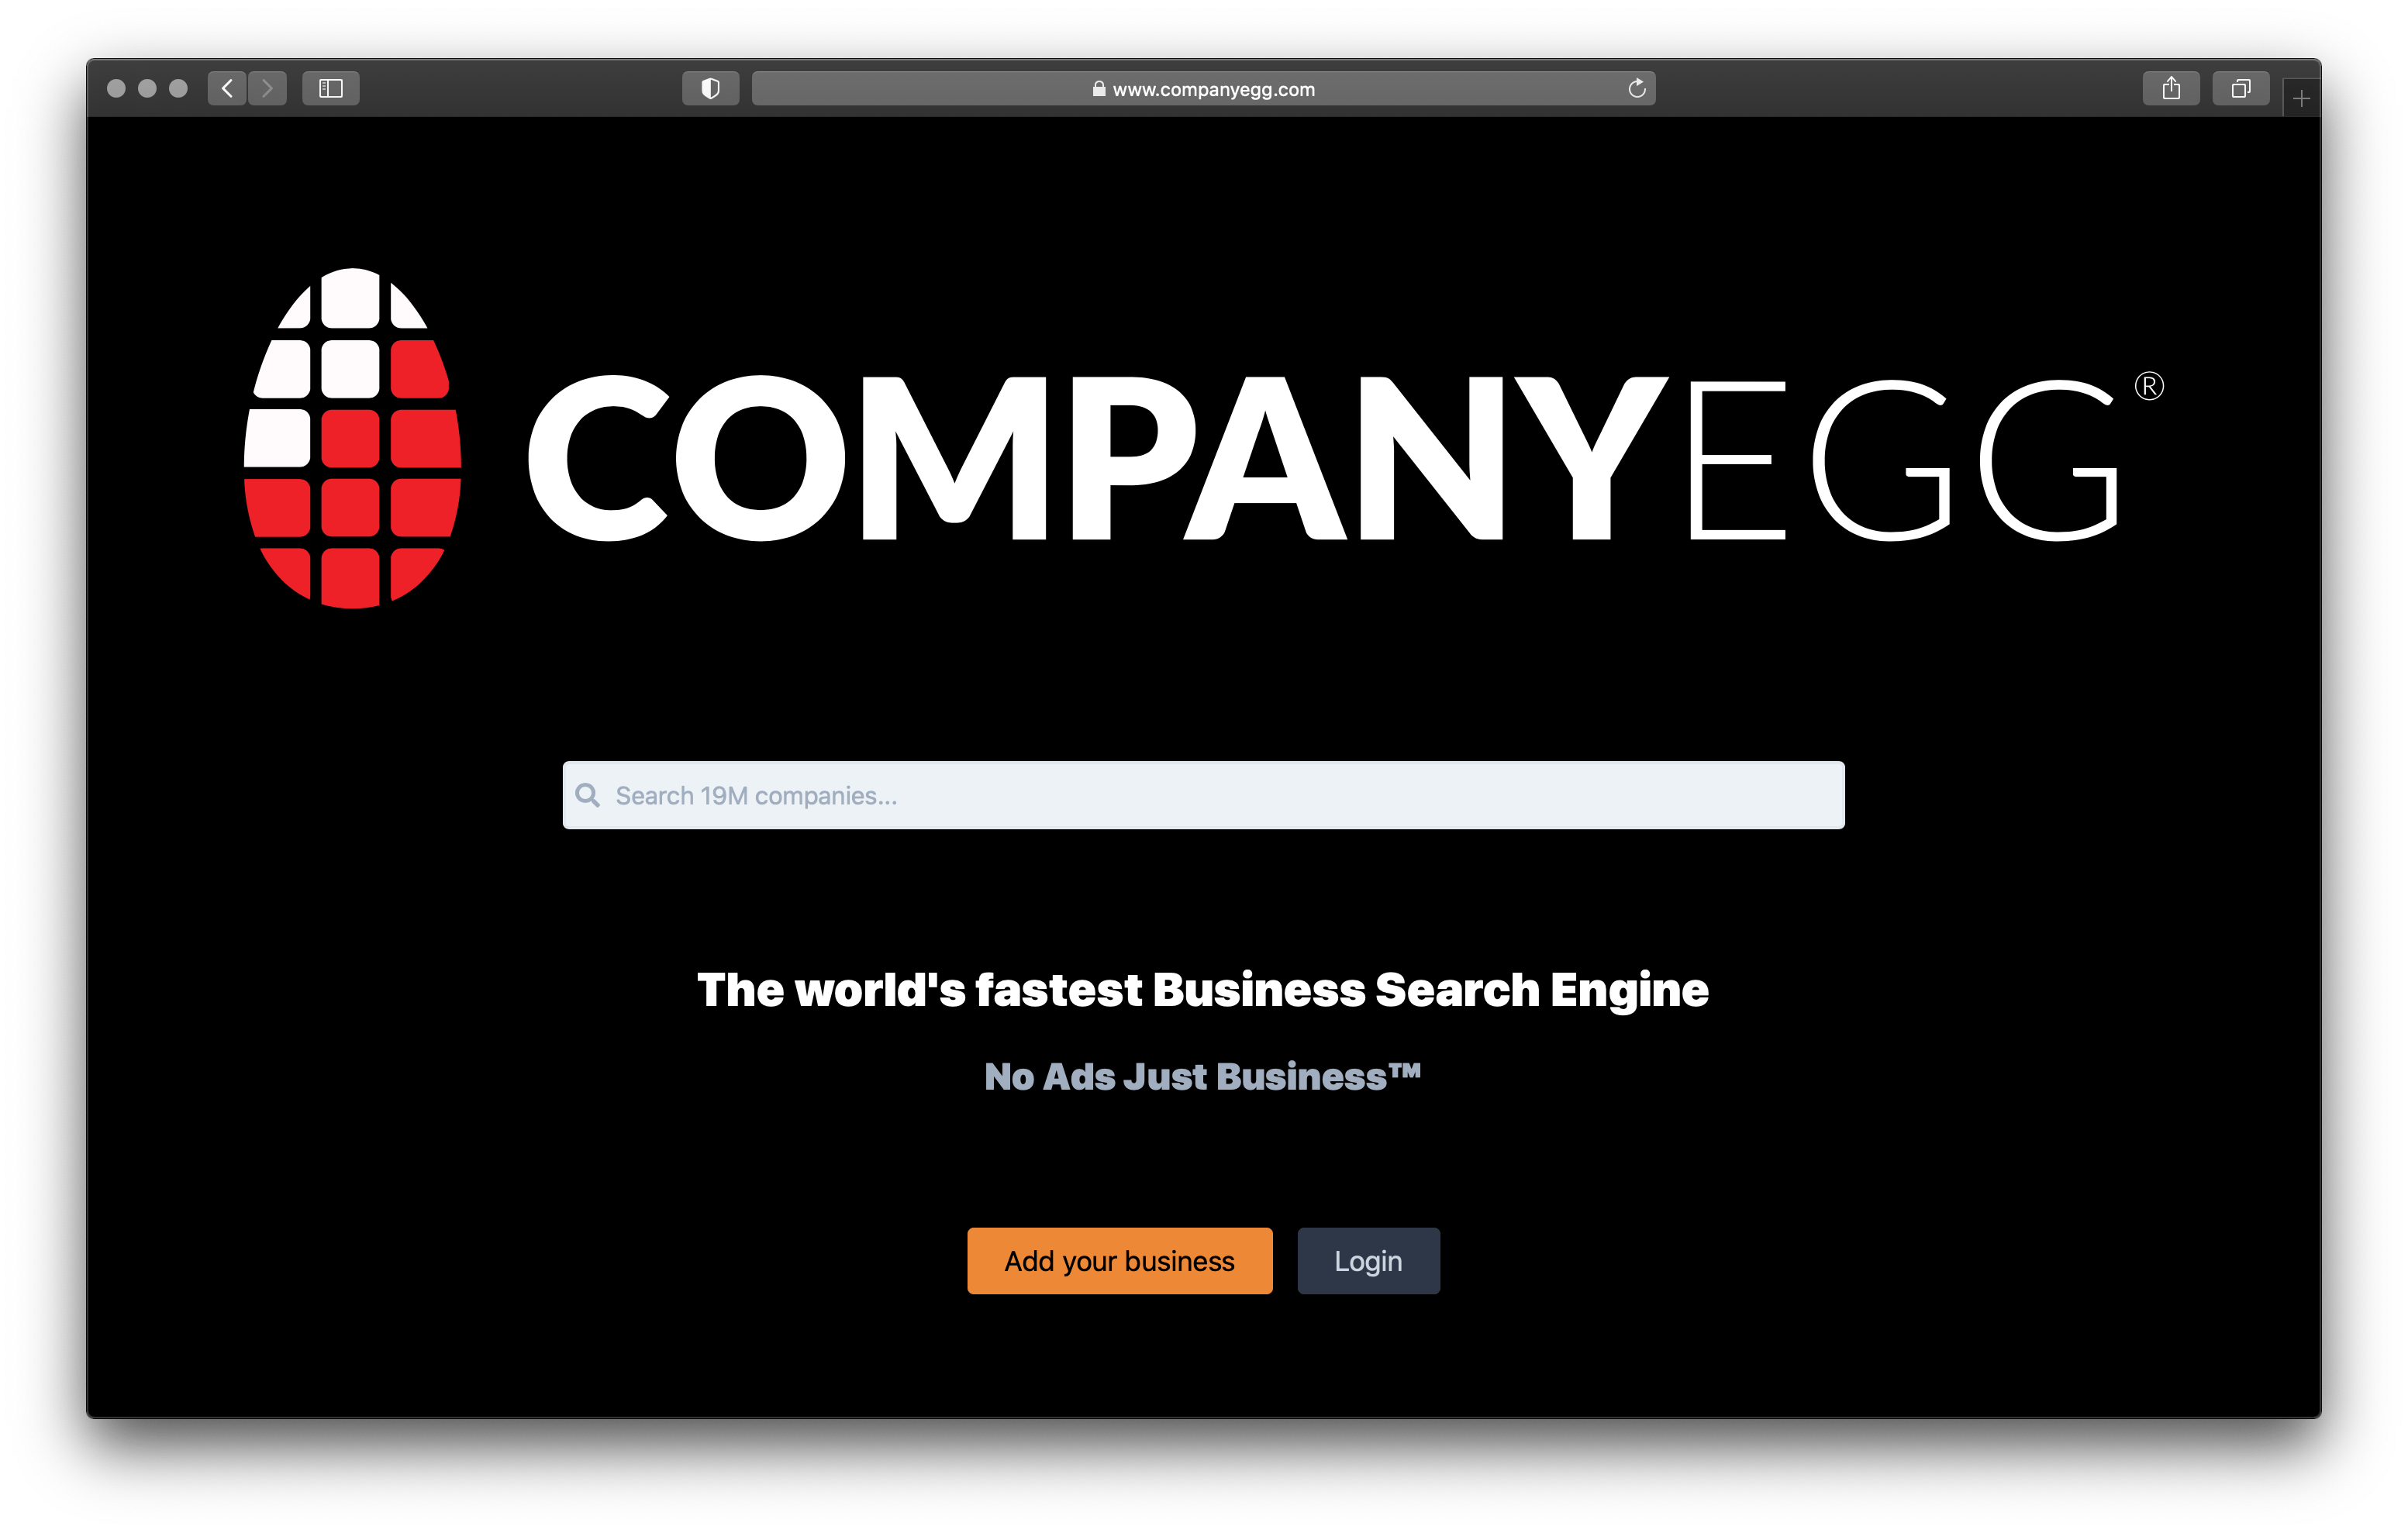 CompanyEgg.com